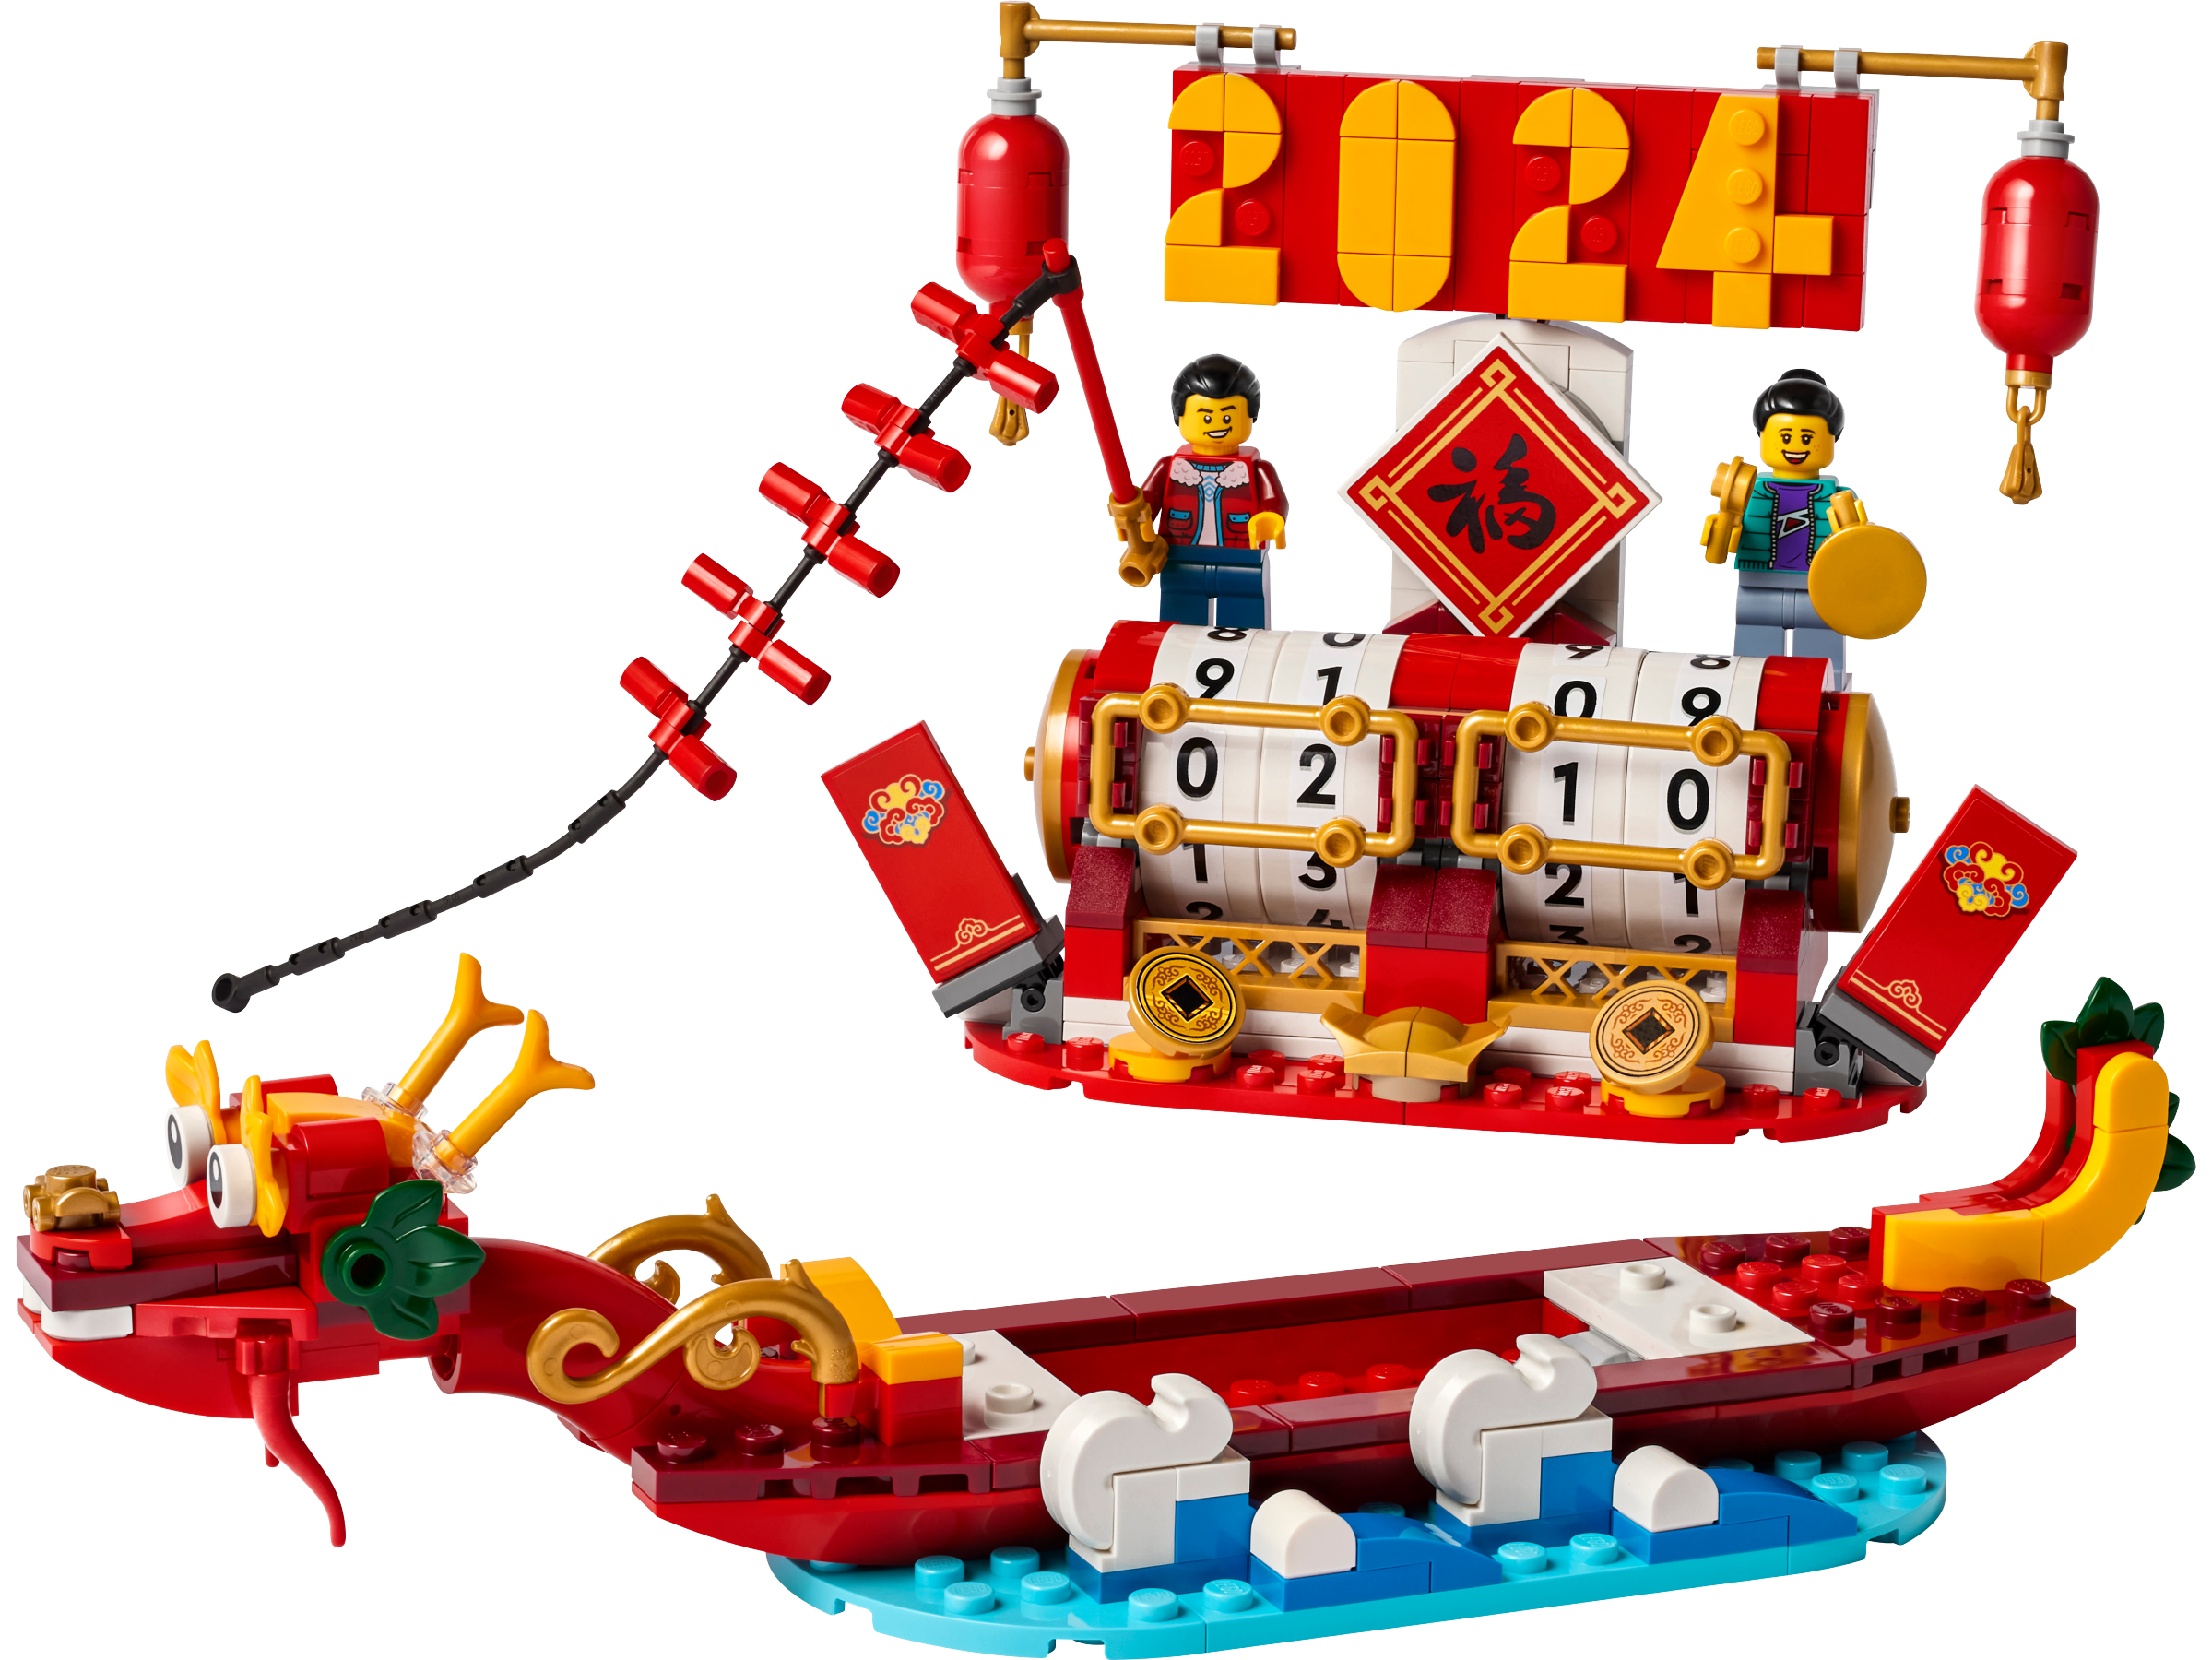 🐲 LEGO révèle 2 nouveaux sets pour le nouvel an chinois ! 